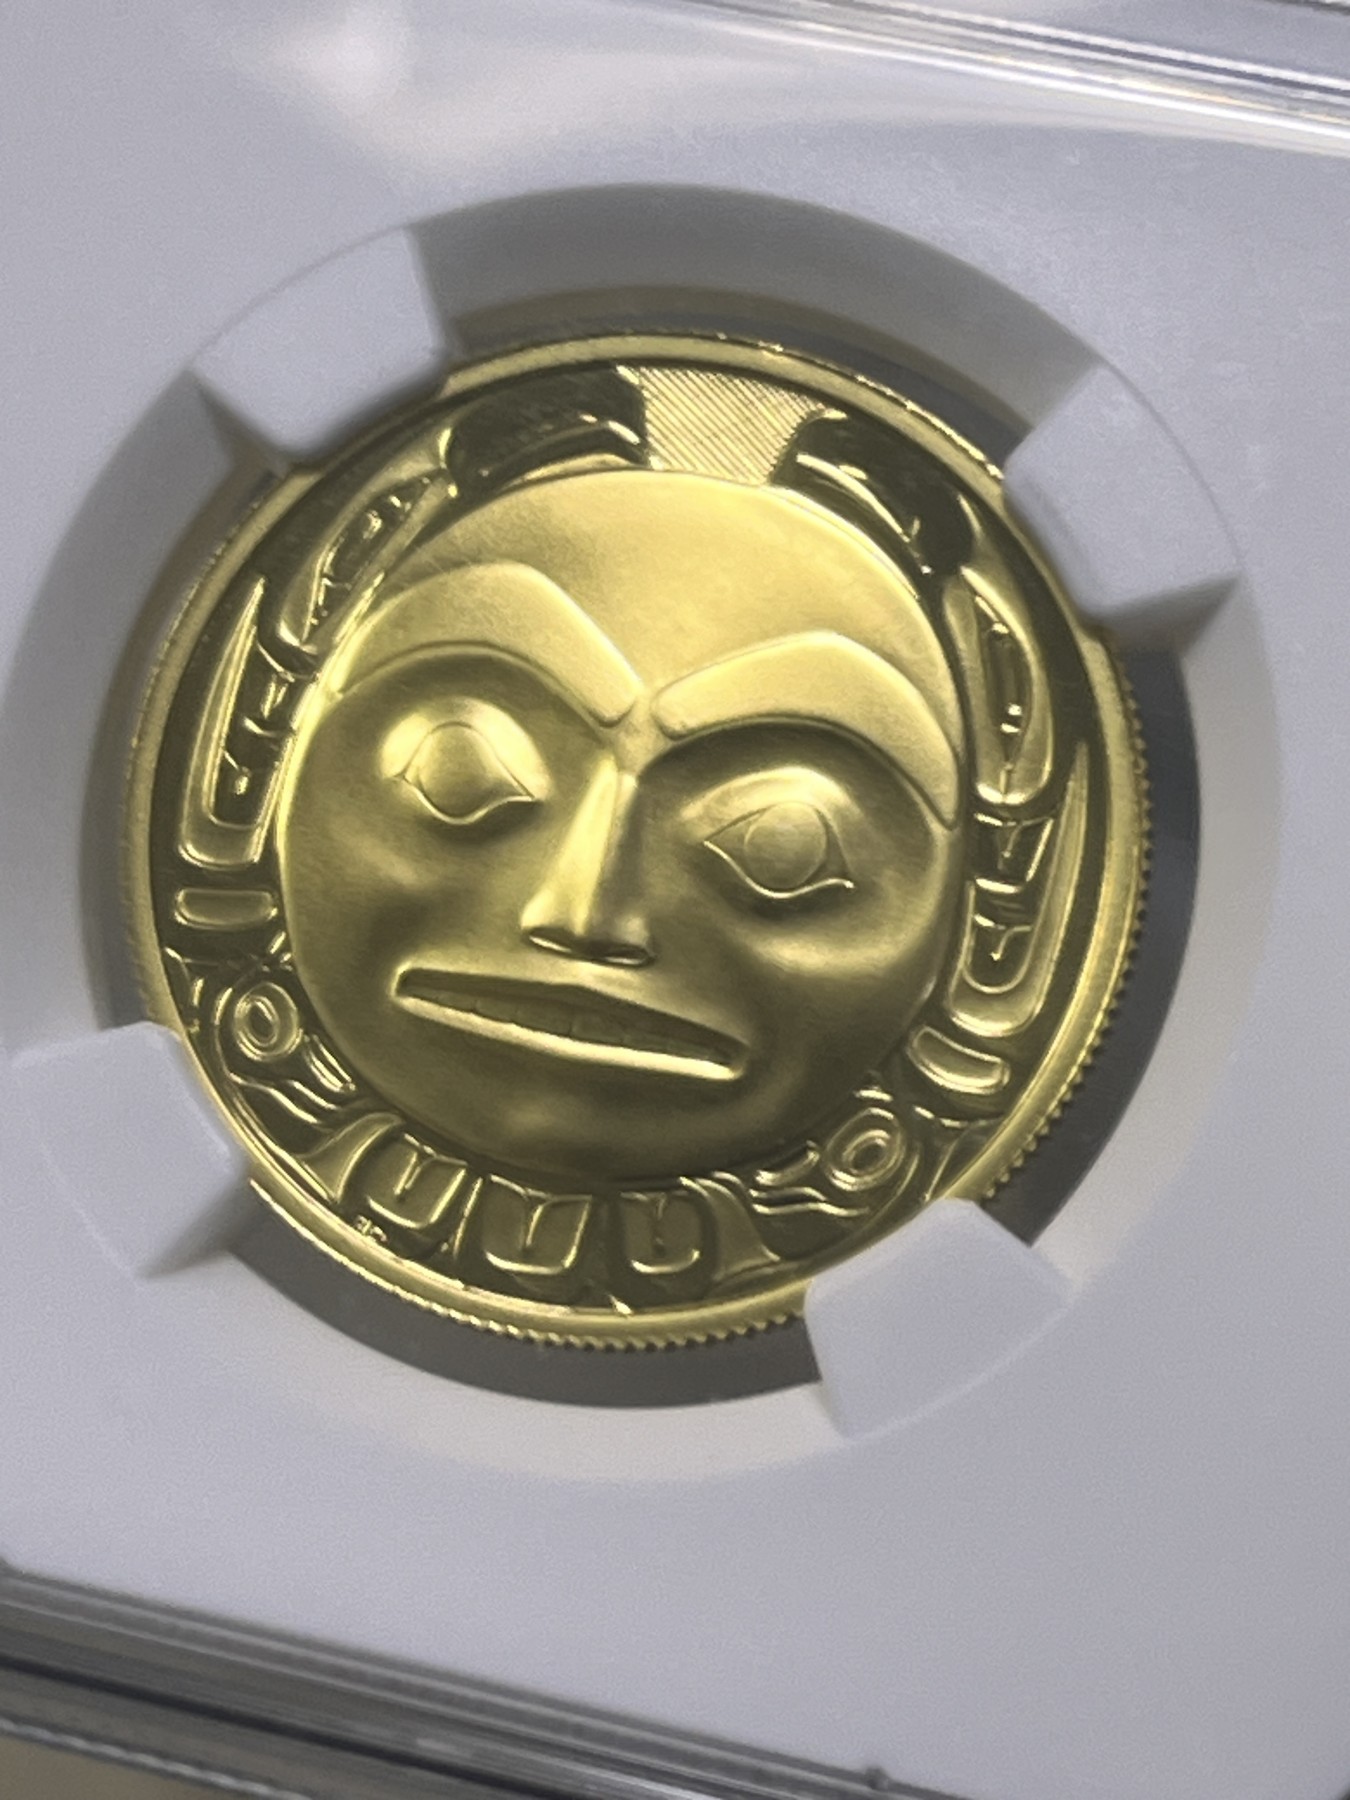 【海寧潮ZB】加拿大1997年涂鸦为世界带来光明纪念金币NGC-PF69无盒无证书，重17.135克，纯度91.67%，直径29毫米，面值200加元，为加拿大本土传统与文化系列首枚金币，荣获1999年世界硬币大奖赛最佳金币大奖，该币还荣获1997年新加坡国际硬币展的最佳硬币奖。2022年11月，HA同分拍卖成交价1260美金。。